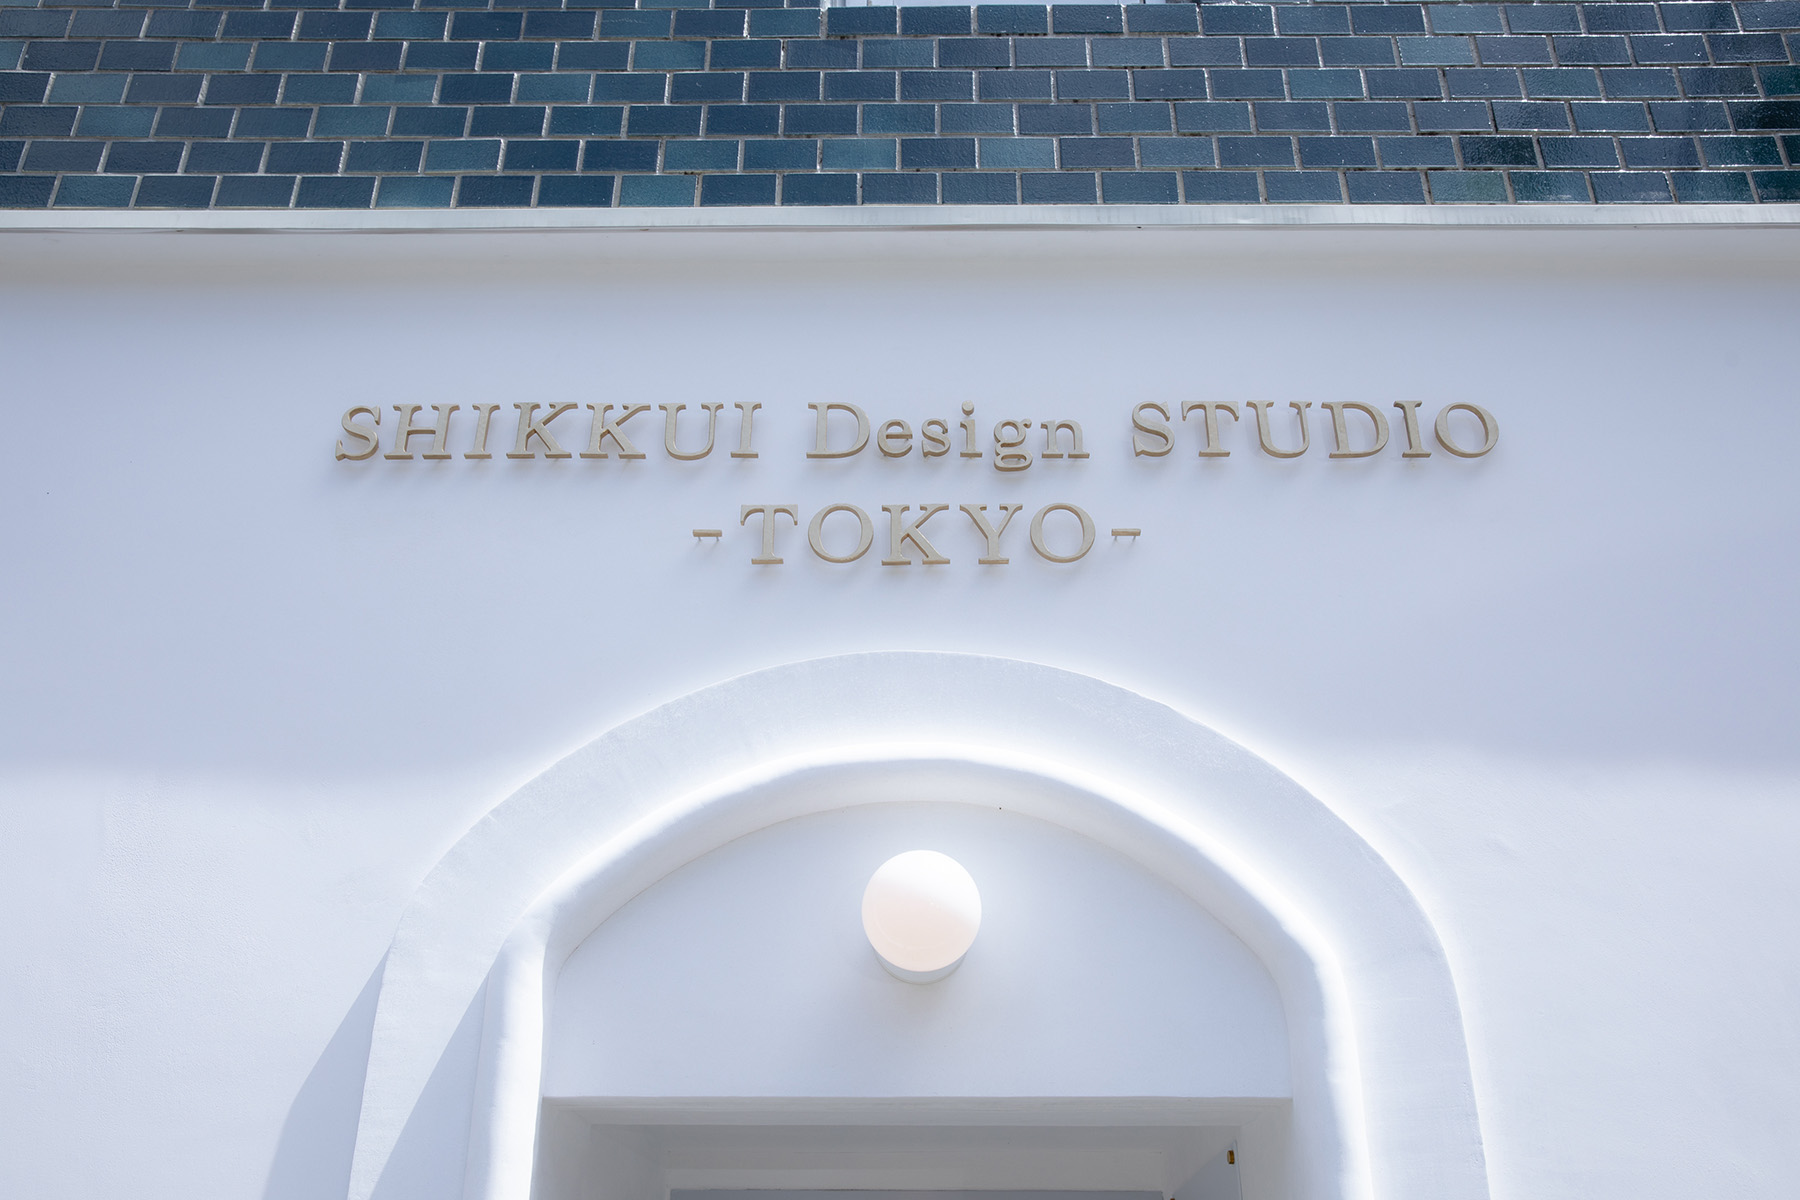 漆喰空間を体感できるショールームビル 東京・上野にオープン !